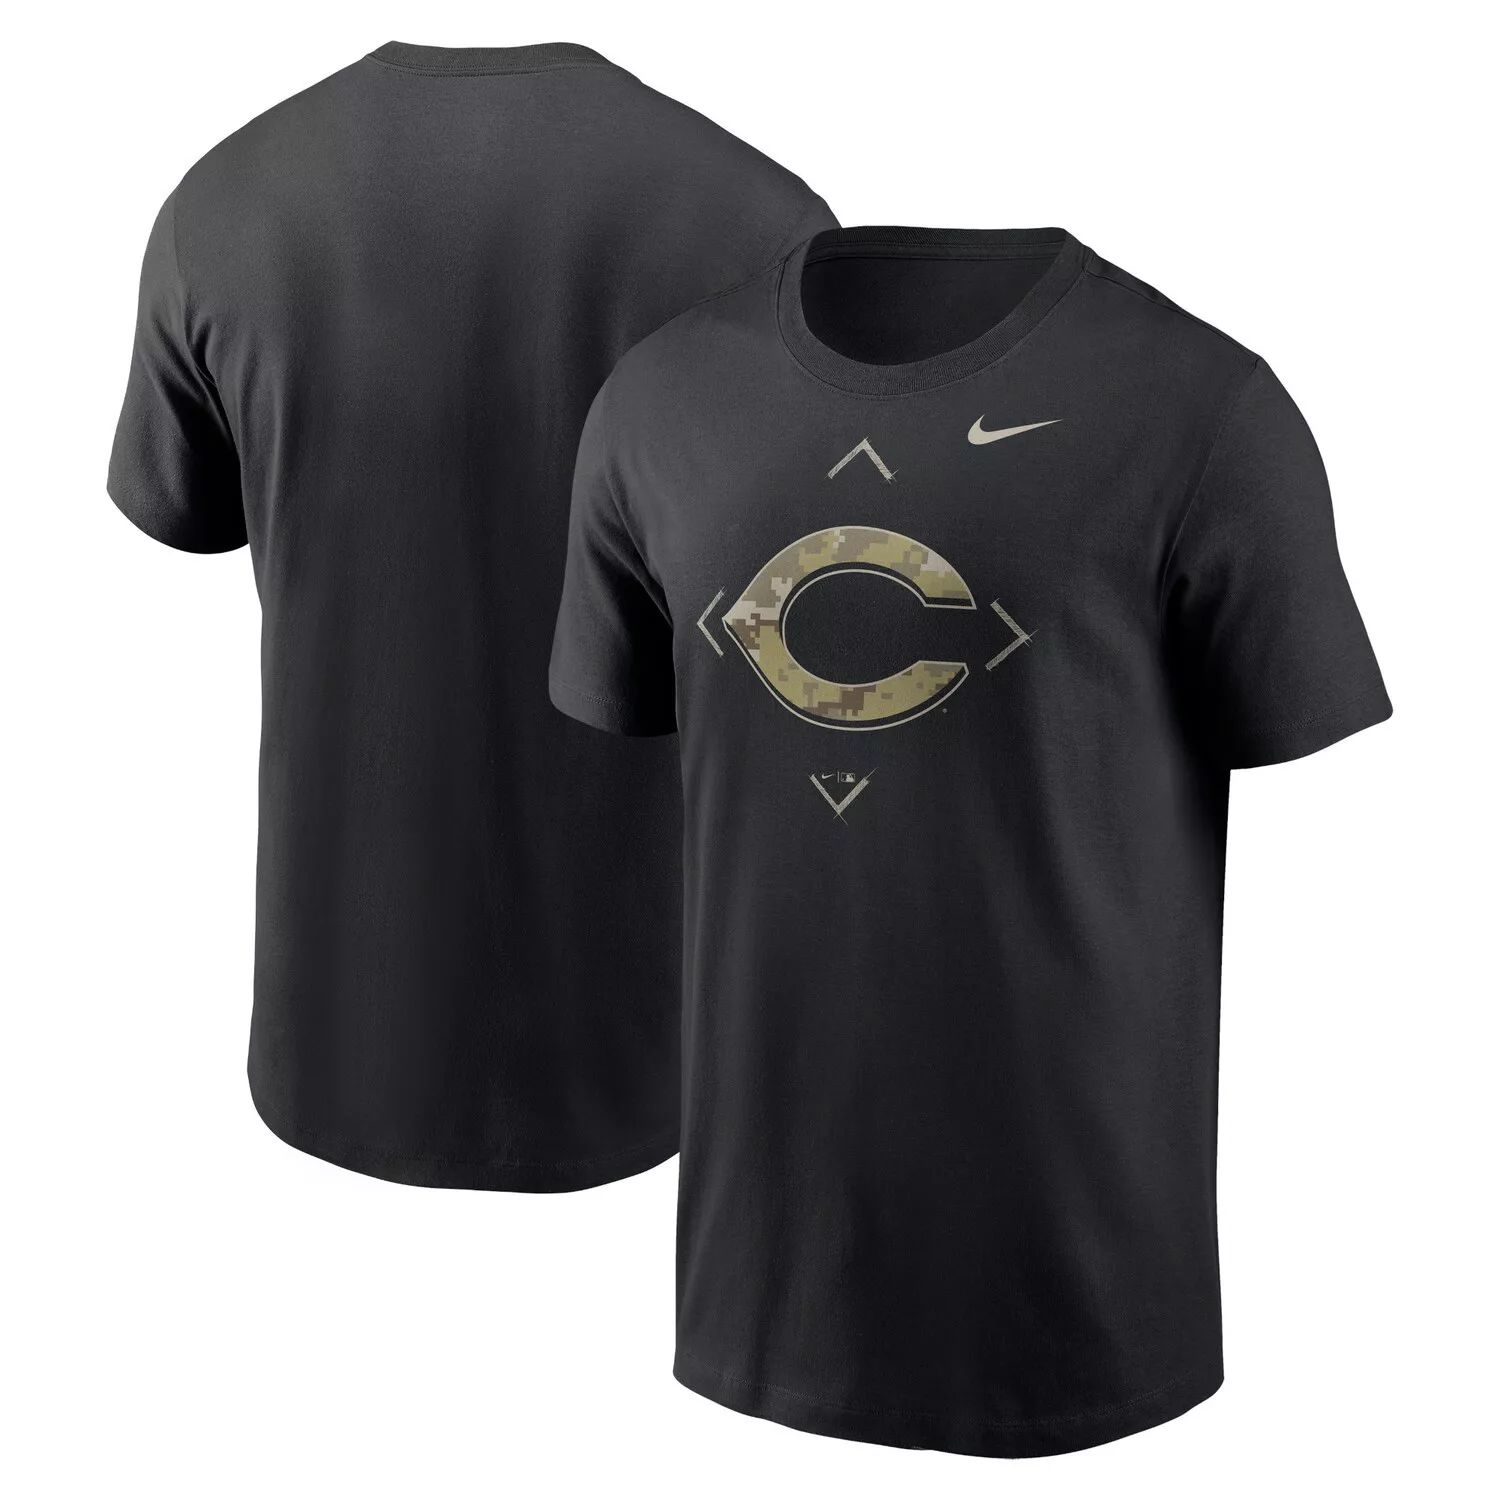 Мужская черная футболка с камуфляжным логотипом Nike Cincinnati Reds